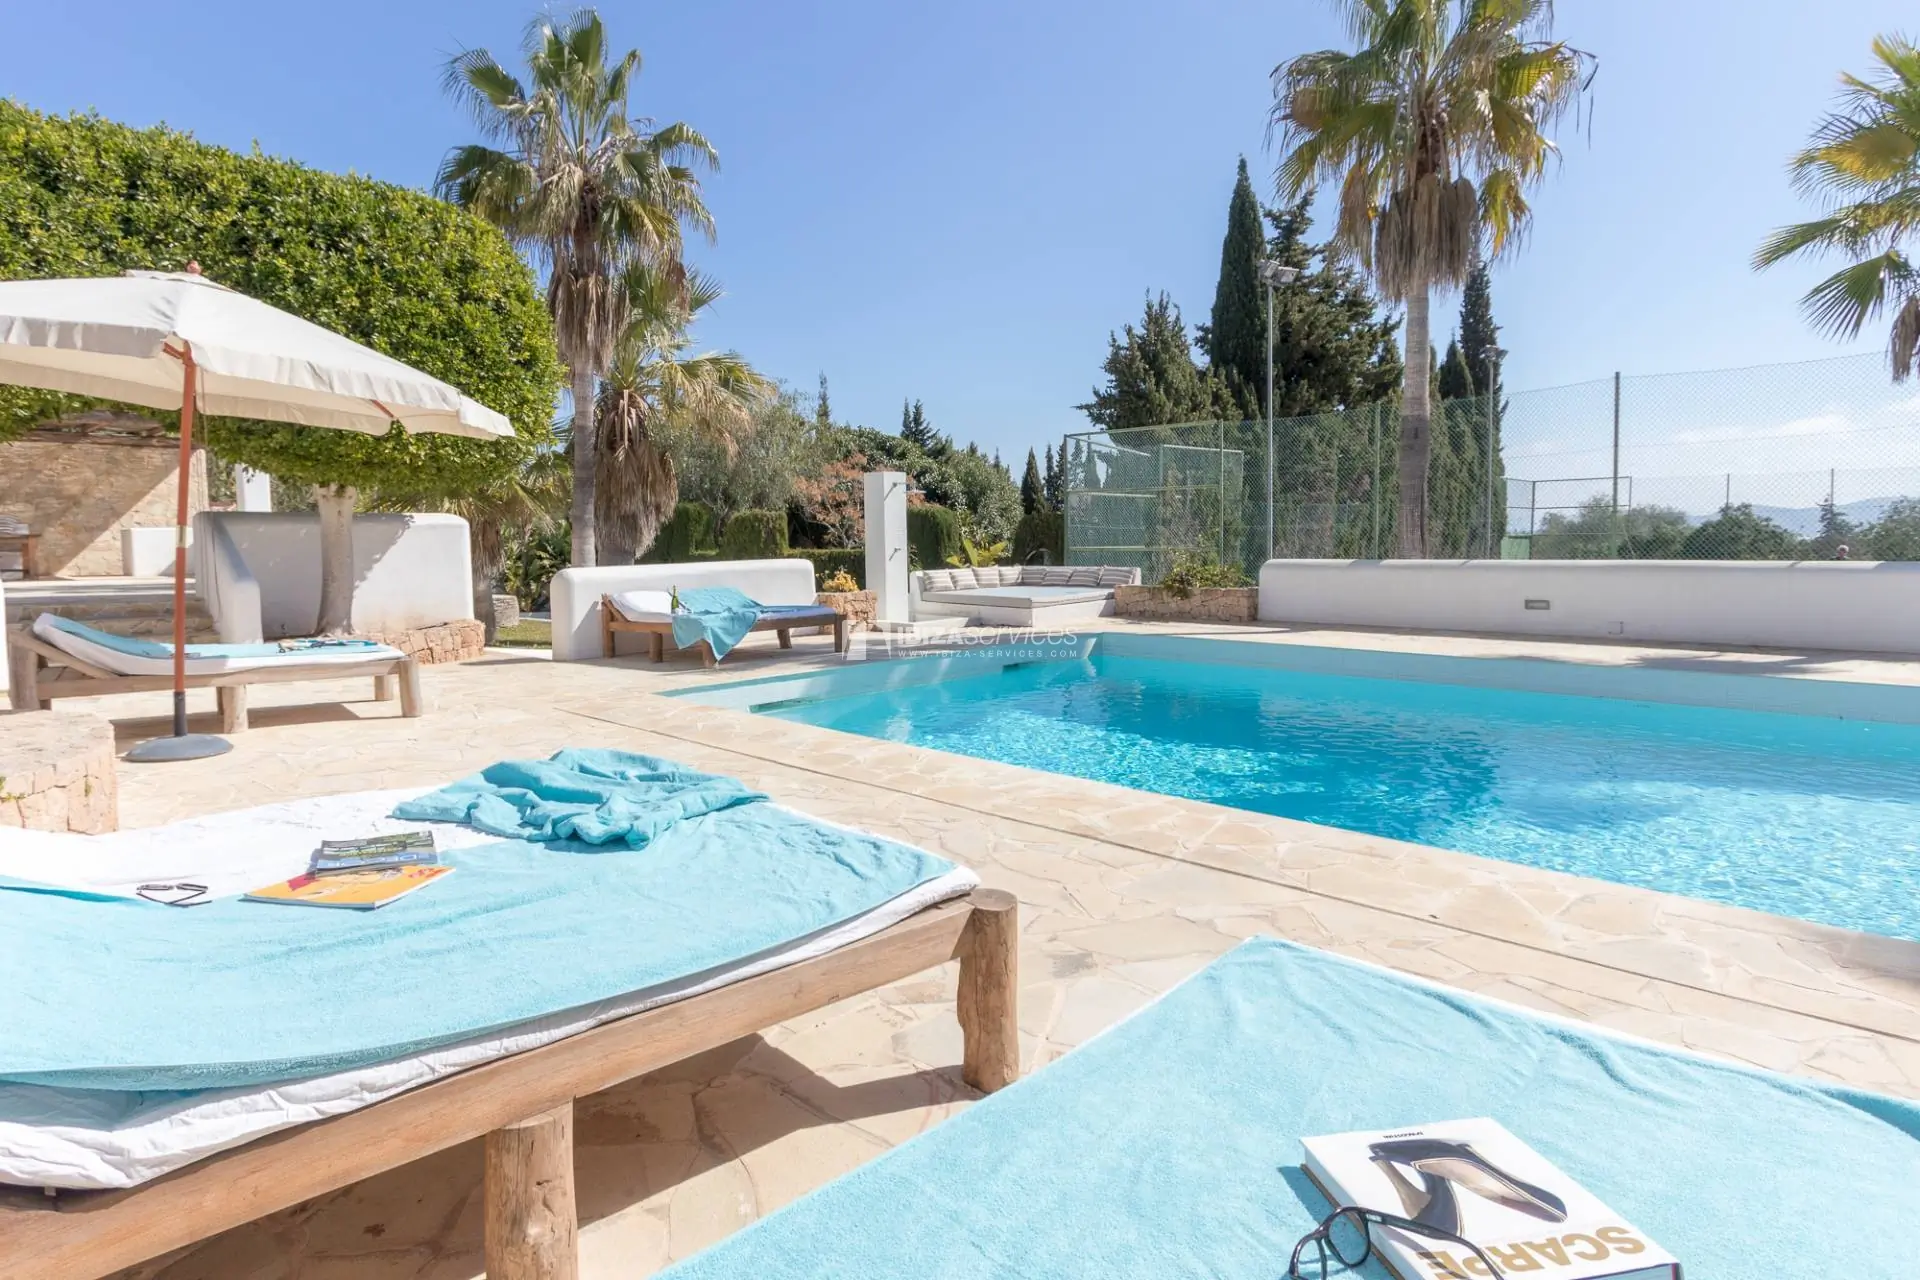 Spectaculaire luxe villa met zwembad en tennisbaan